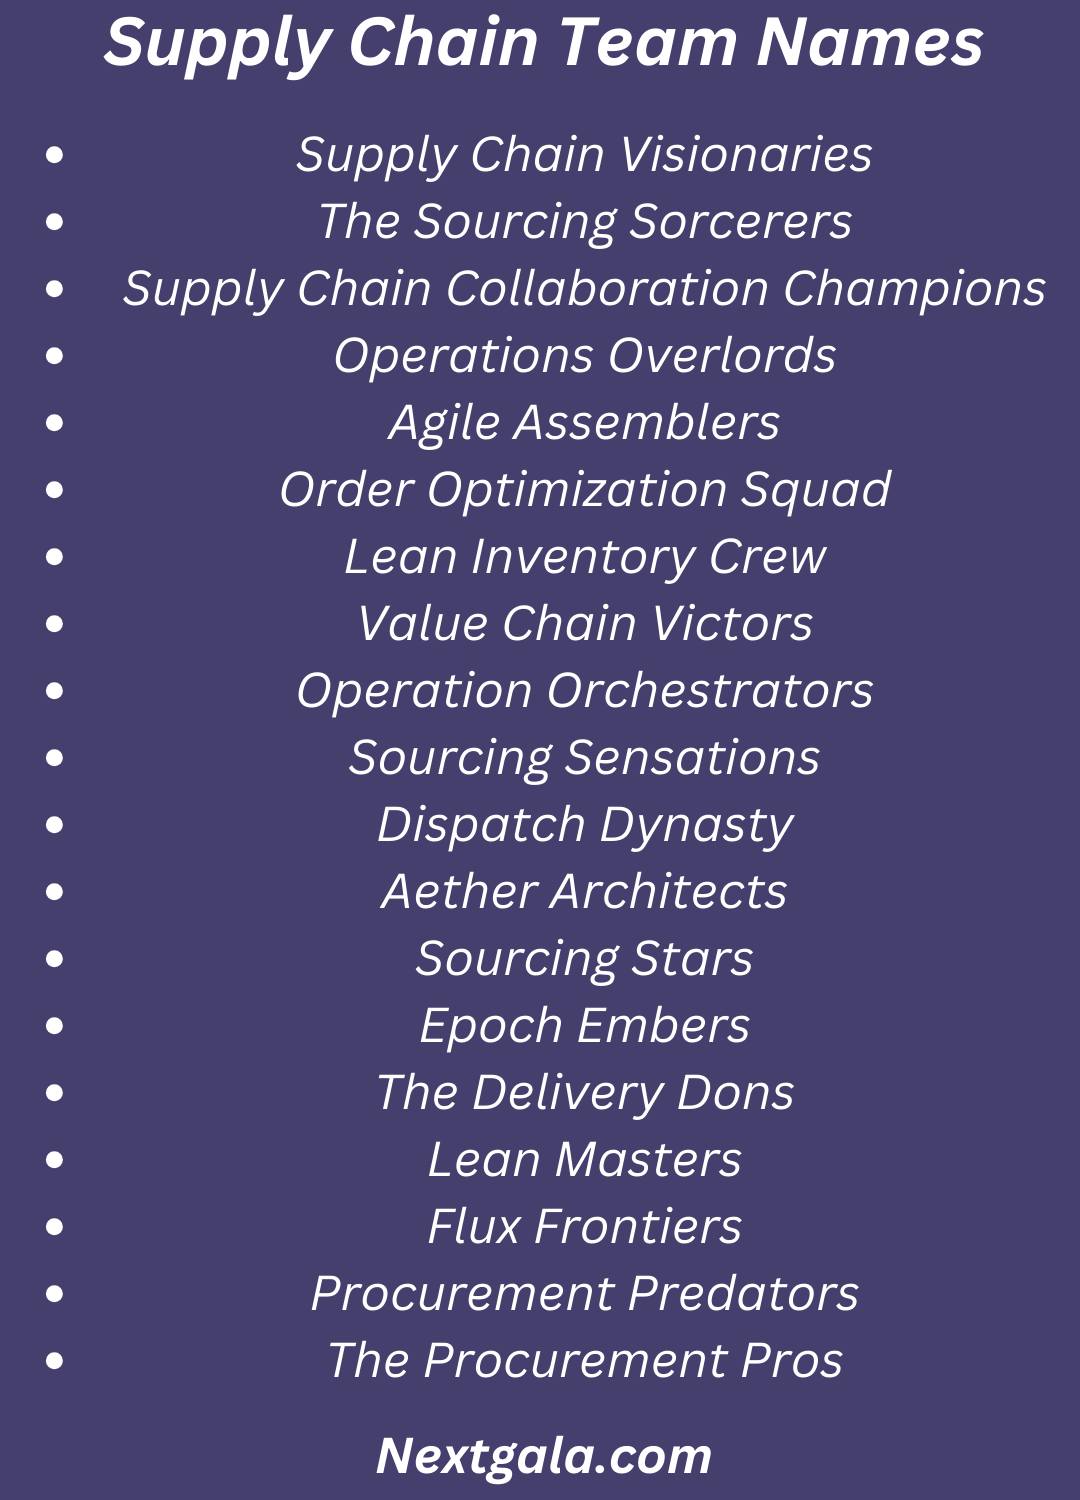 Supply Chain Team Names